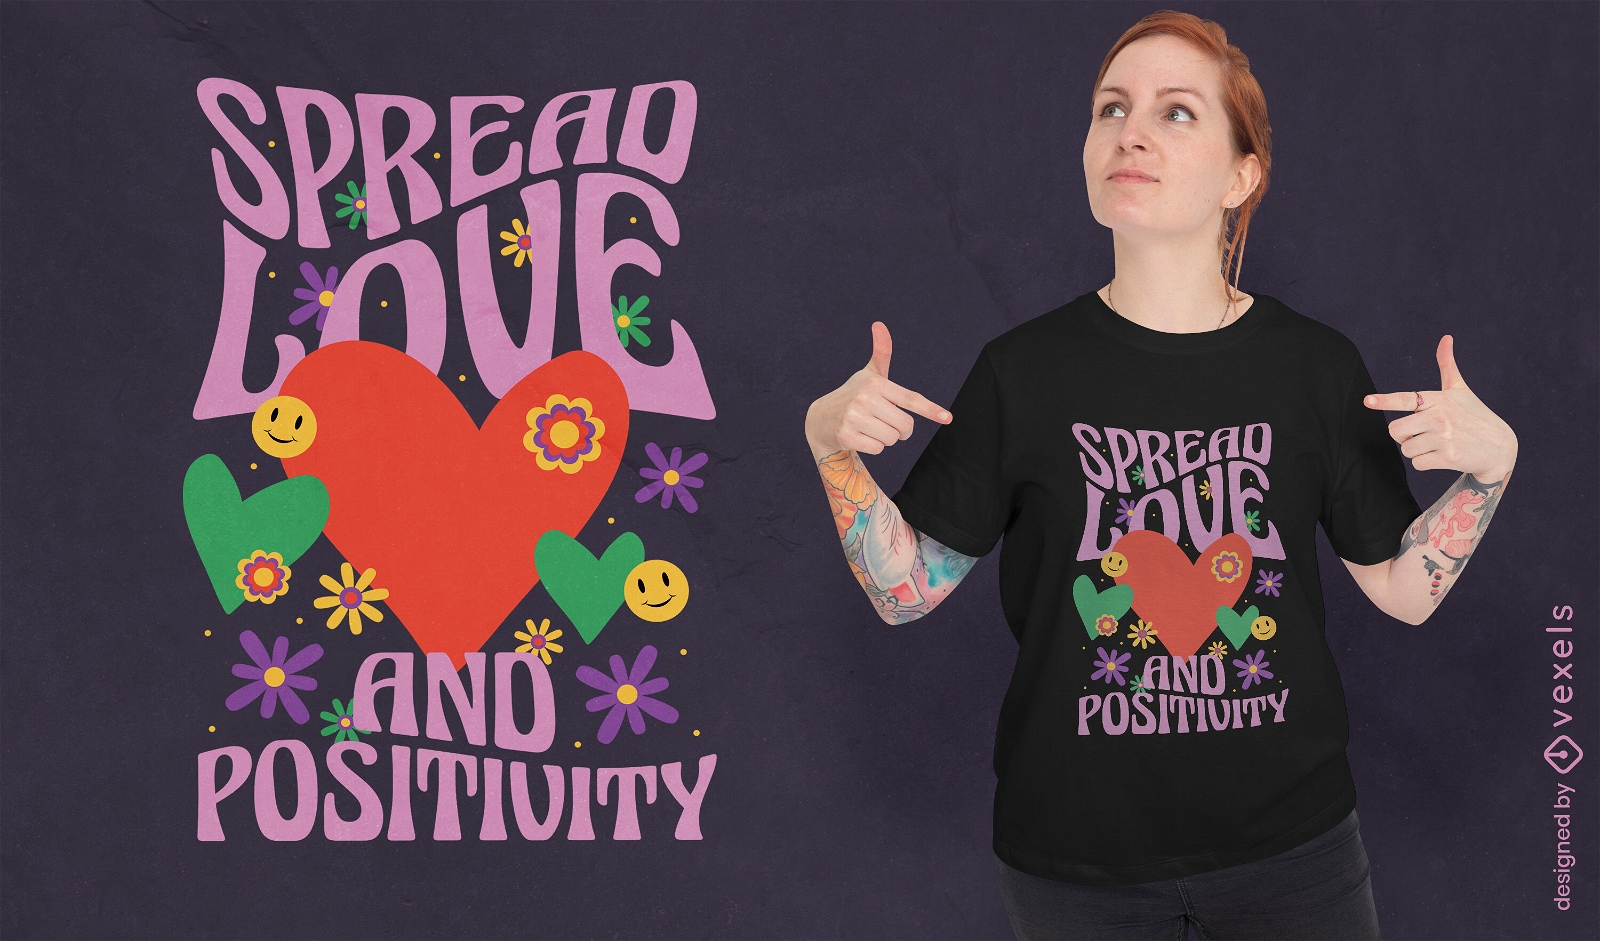 Dise?o de camiseta retro de amor y positividad.